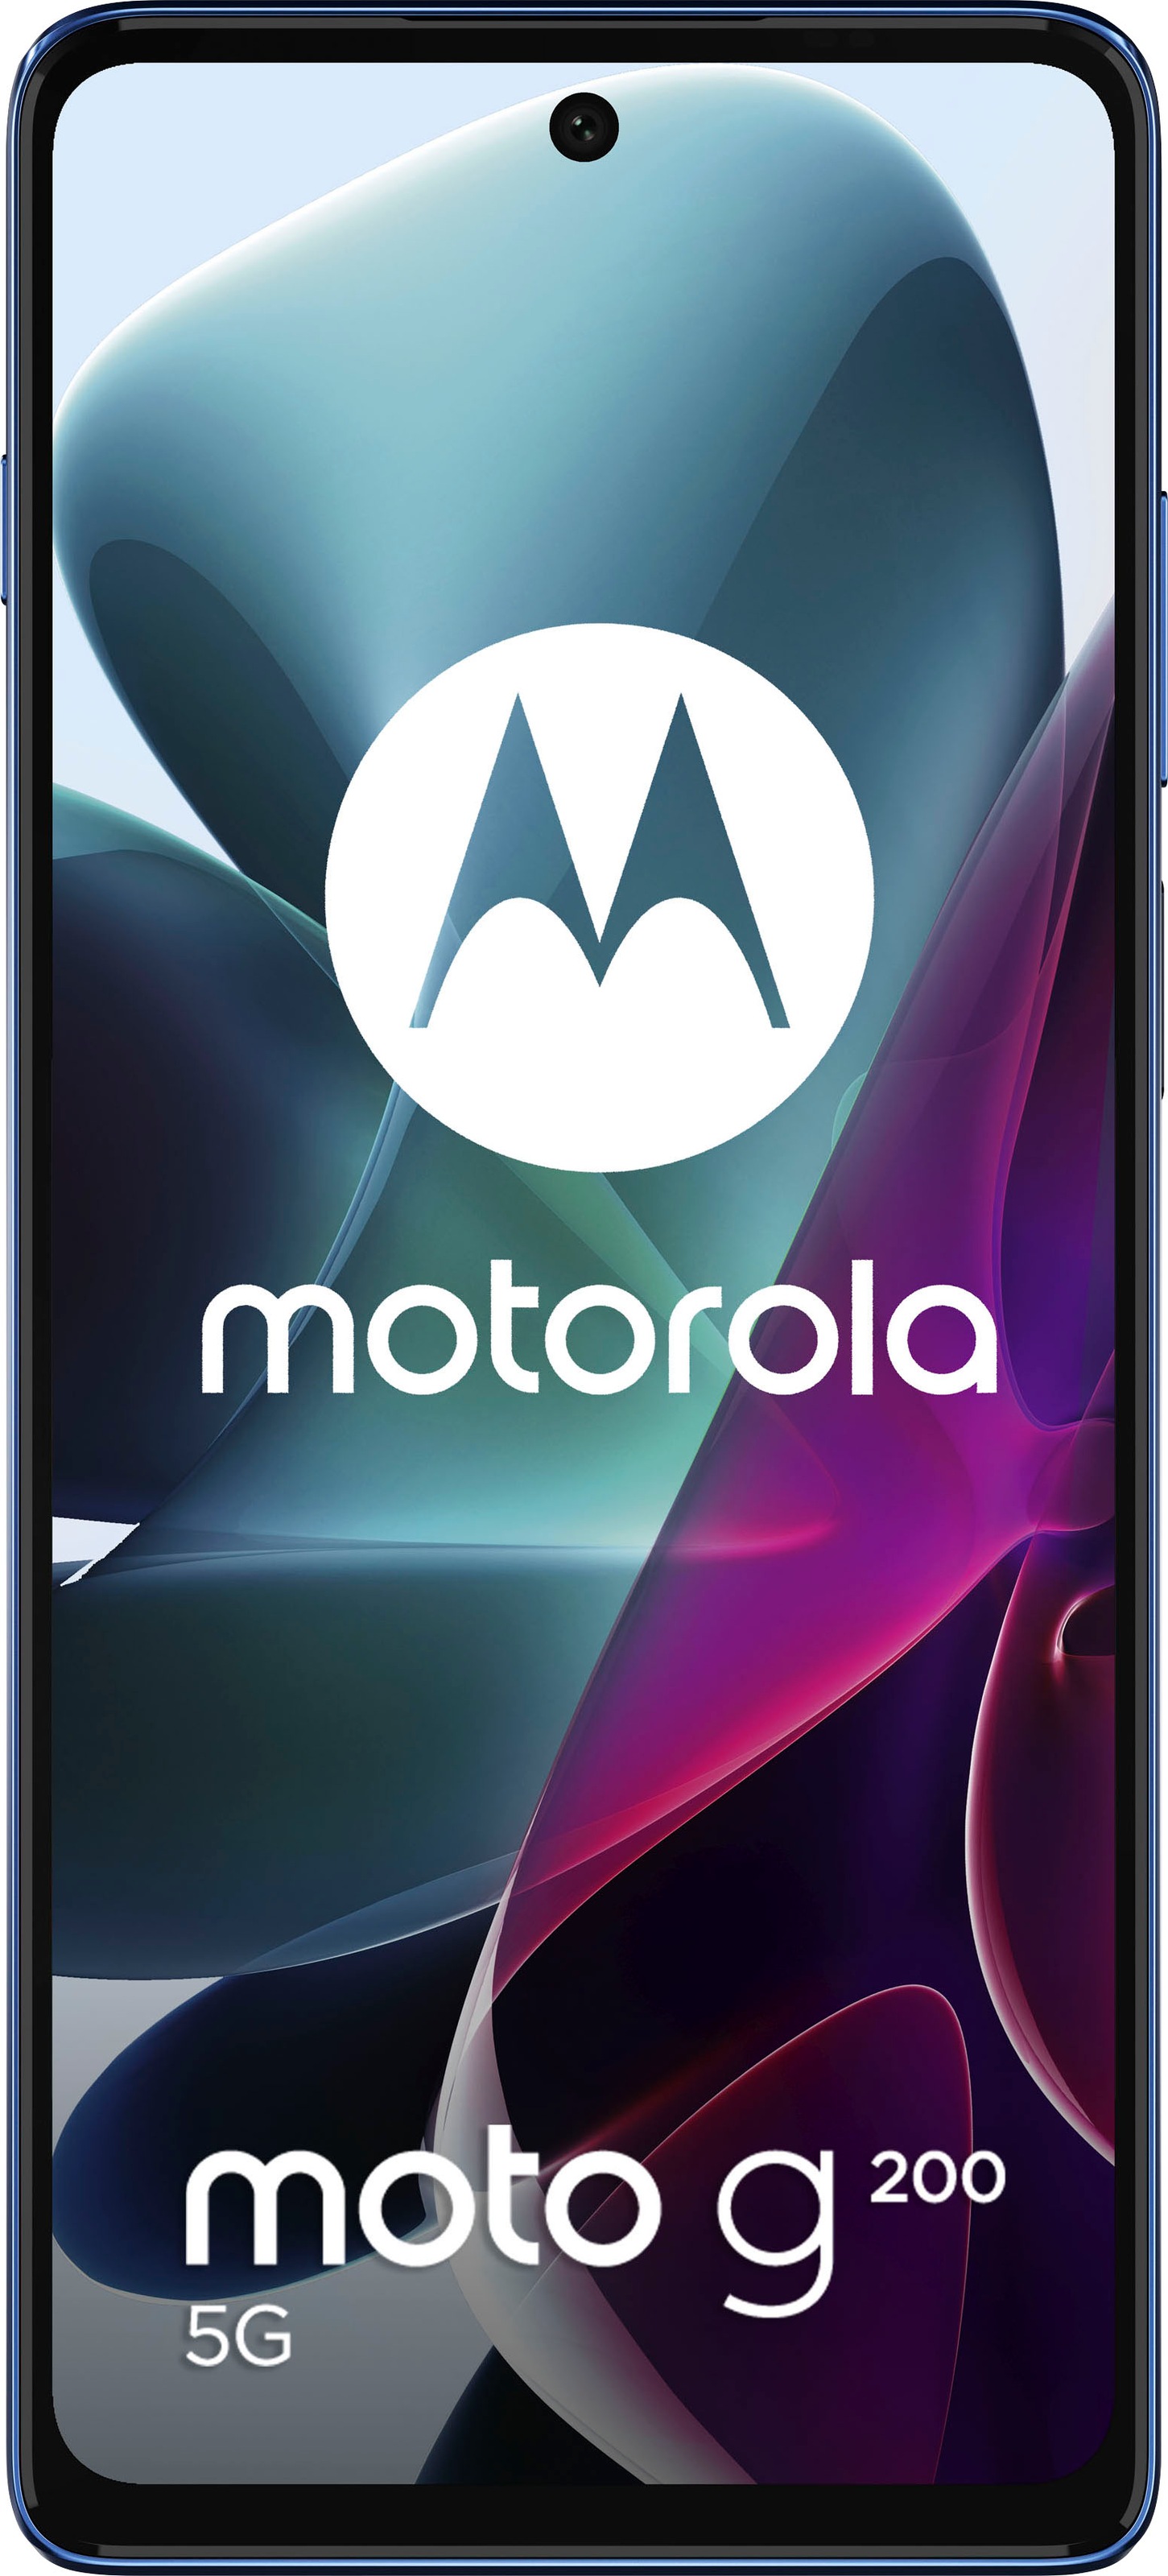 Motorola Smartphone »g200 5G«, Stellar Blue, 17,27 cm/6,8 Zoll, 128 GB  Speicherplatz, 108 MP Kamera jetzt bei OTTO